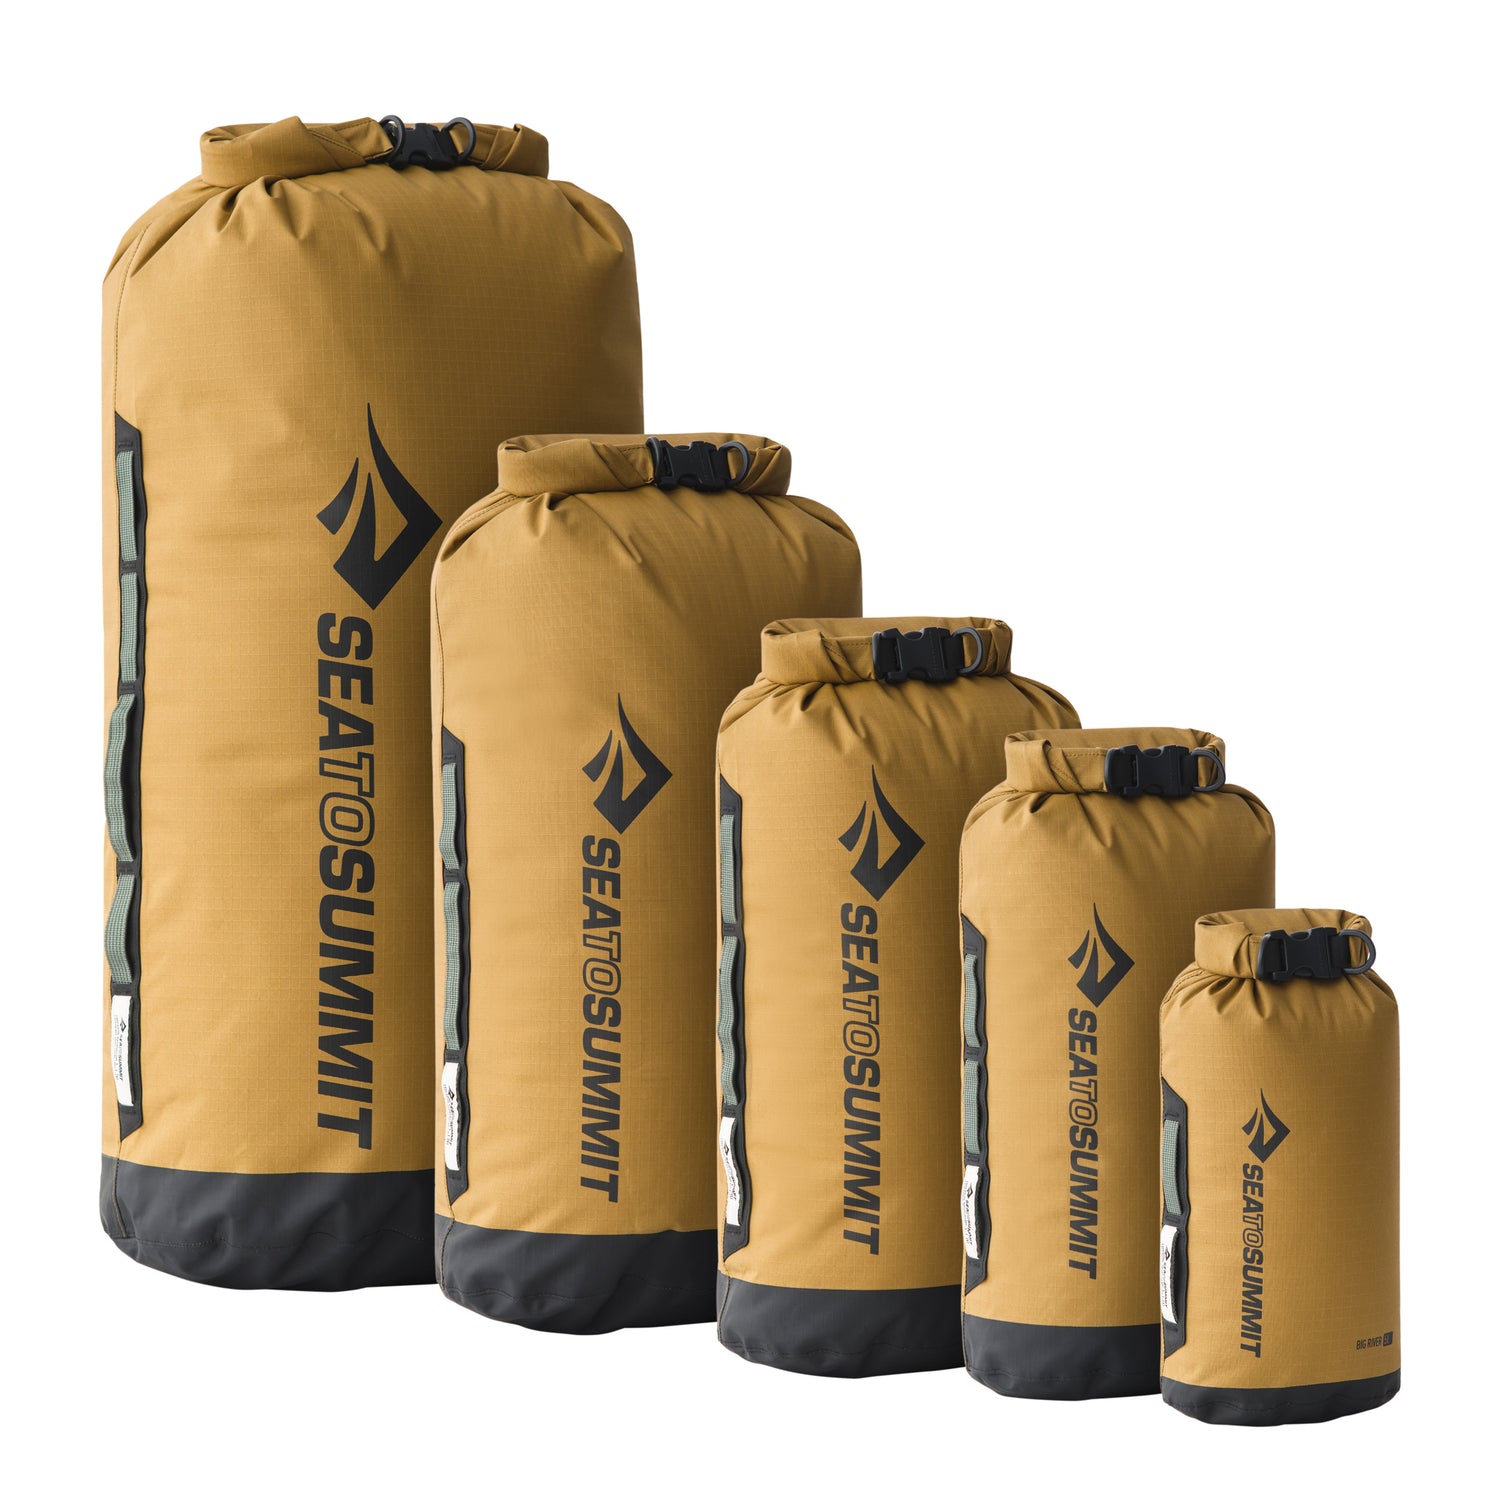 Cylinder Waterproof Small Waterproof Dry Bag